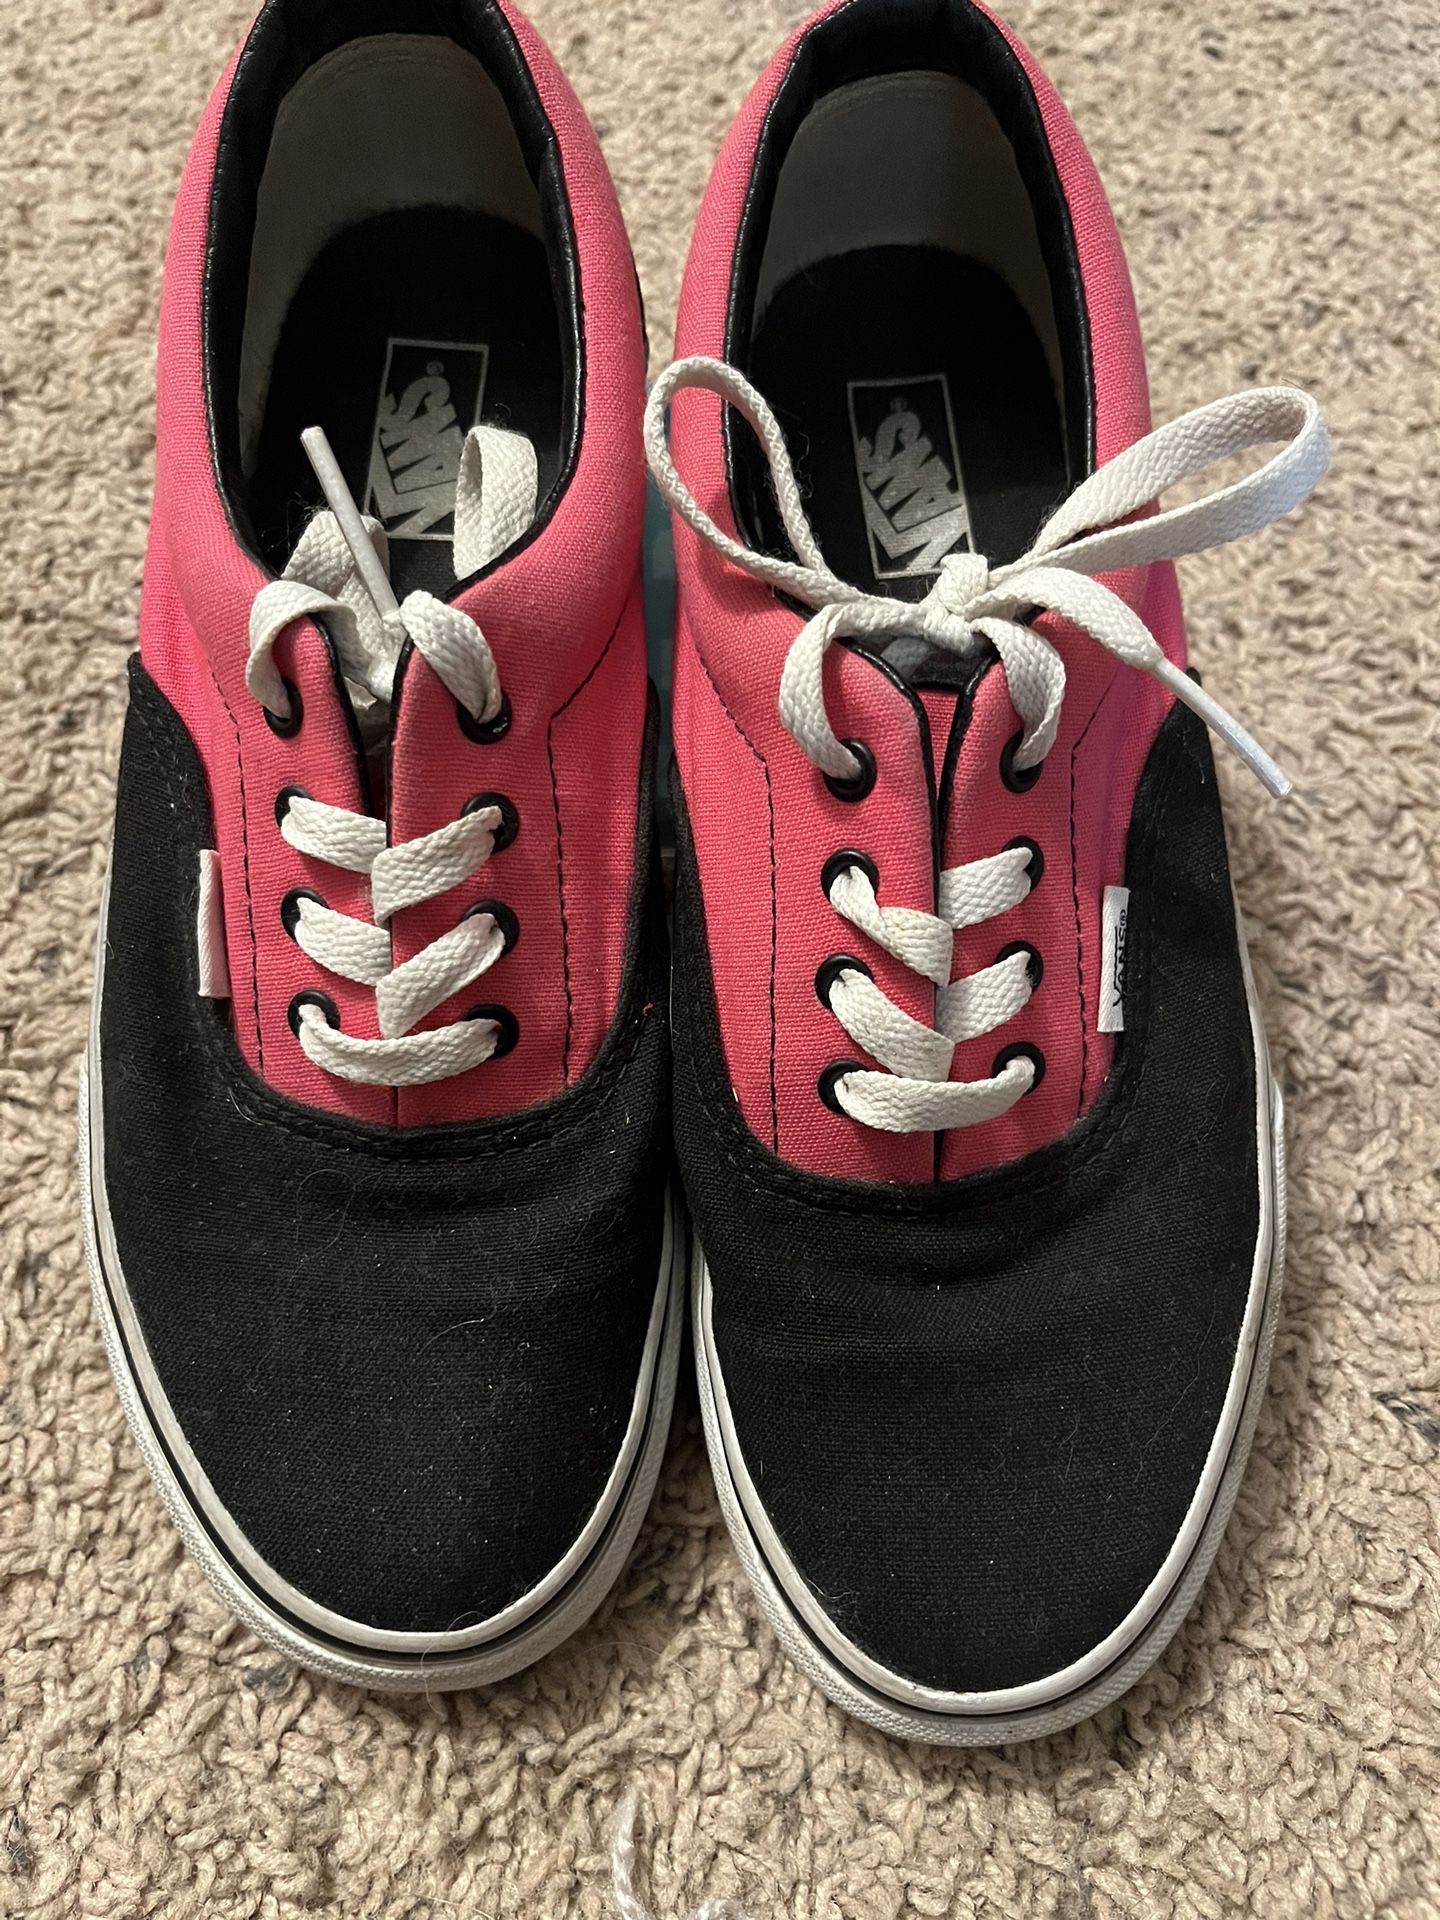 Vans Old Skool Black And Pink Skater Shoes Size 4.0 Kids